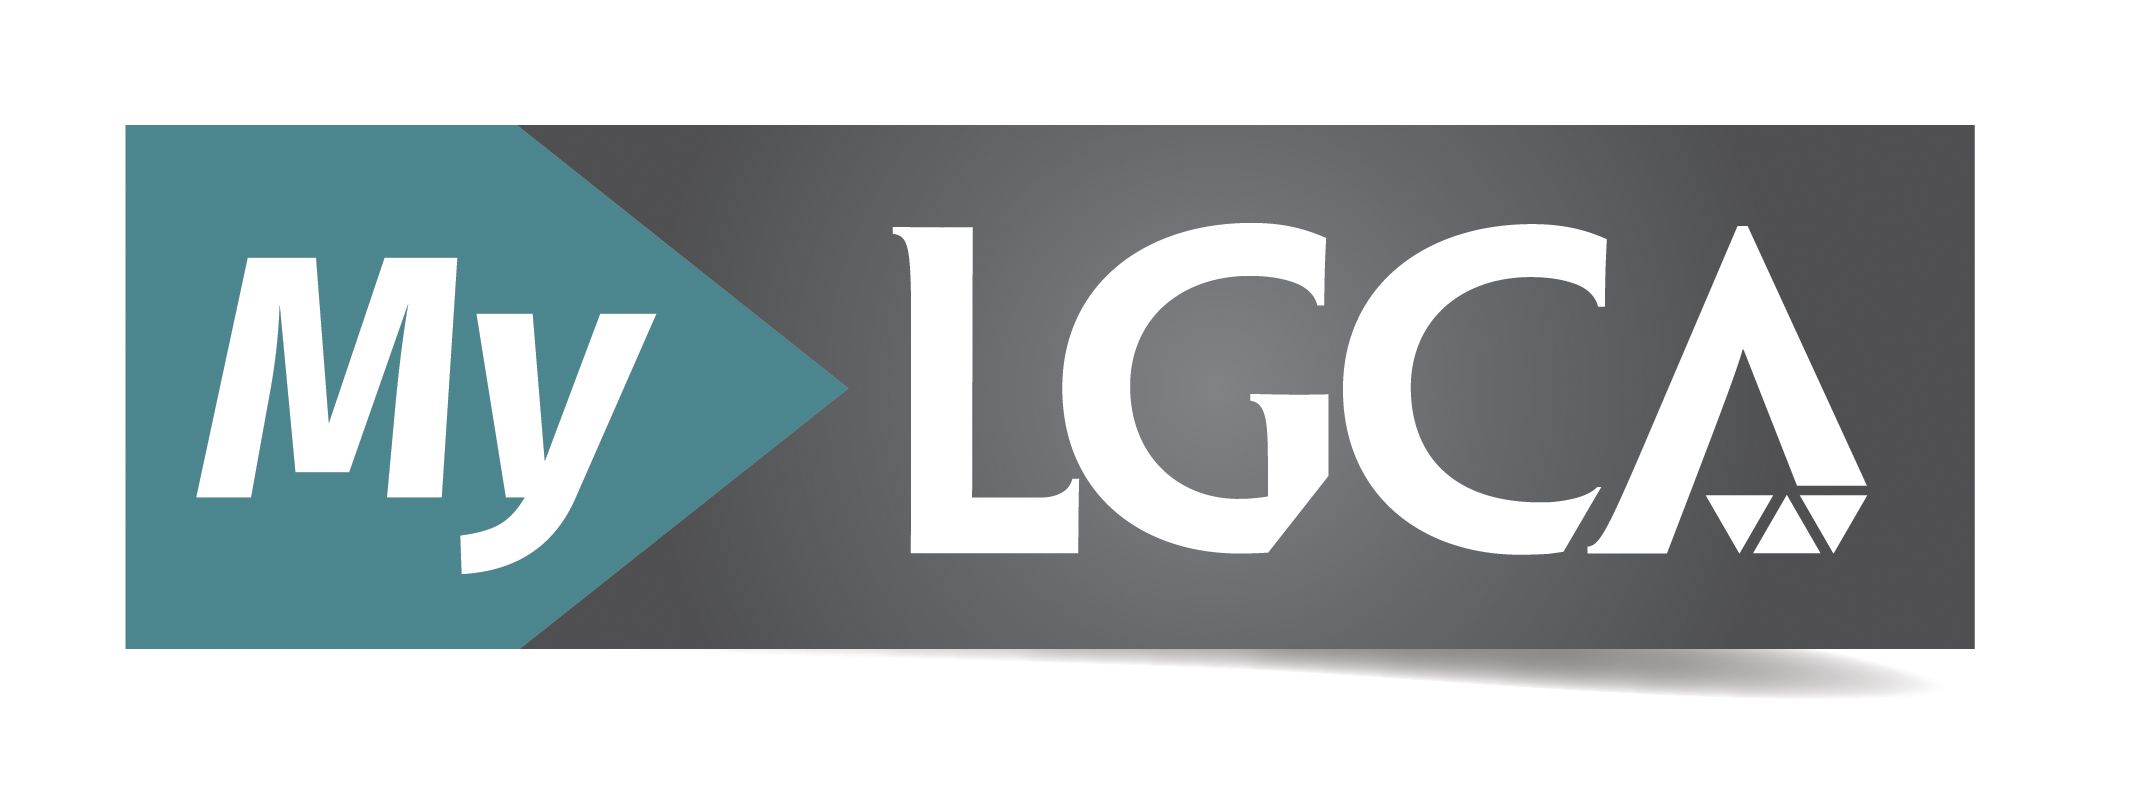 The MyLGCA logo